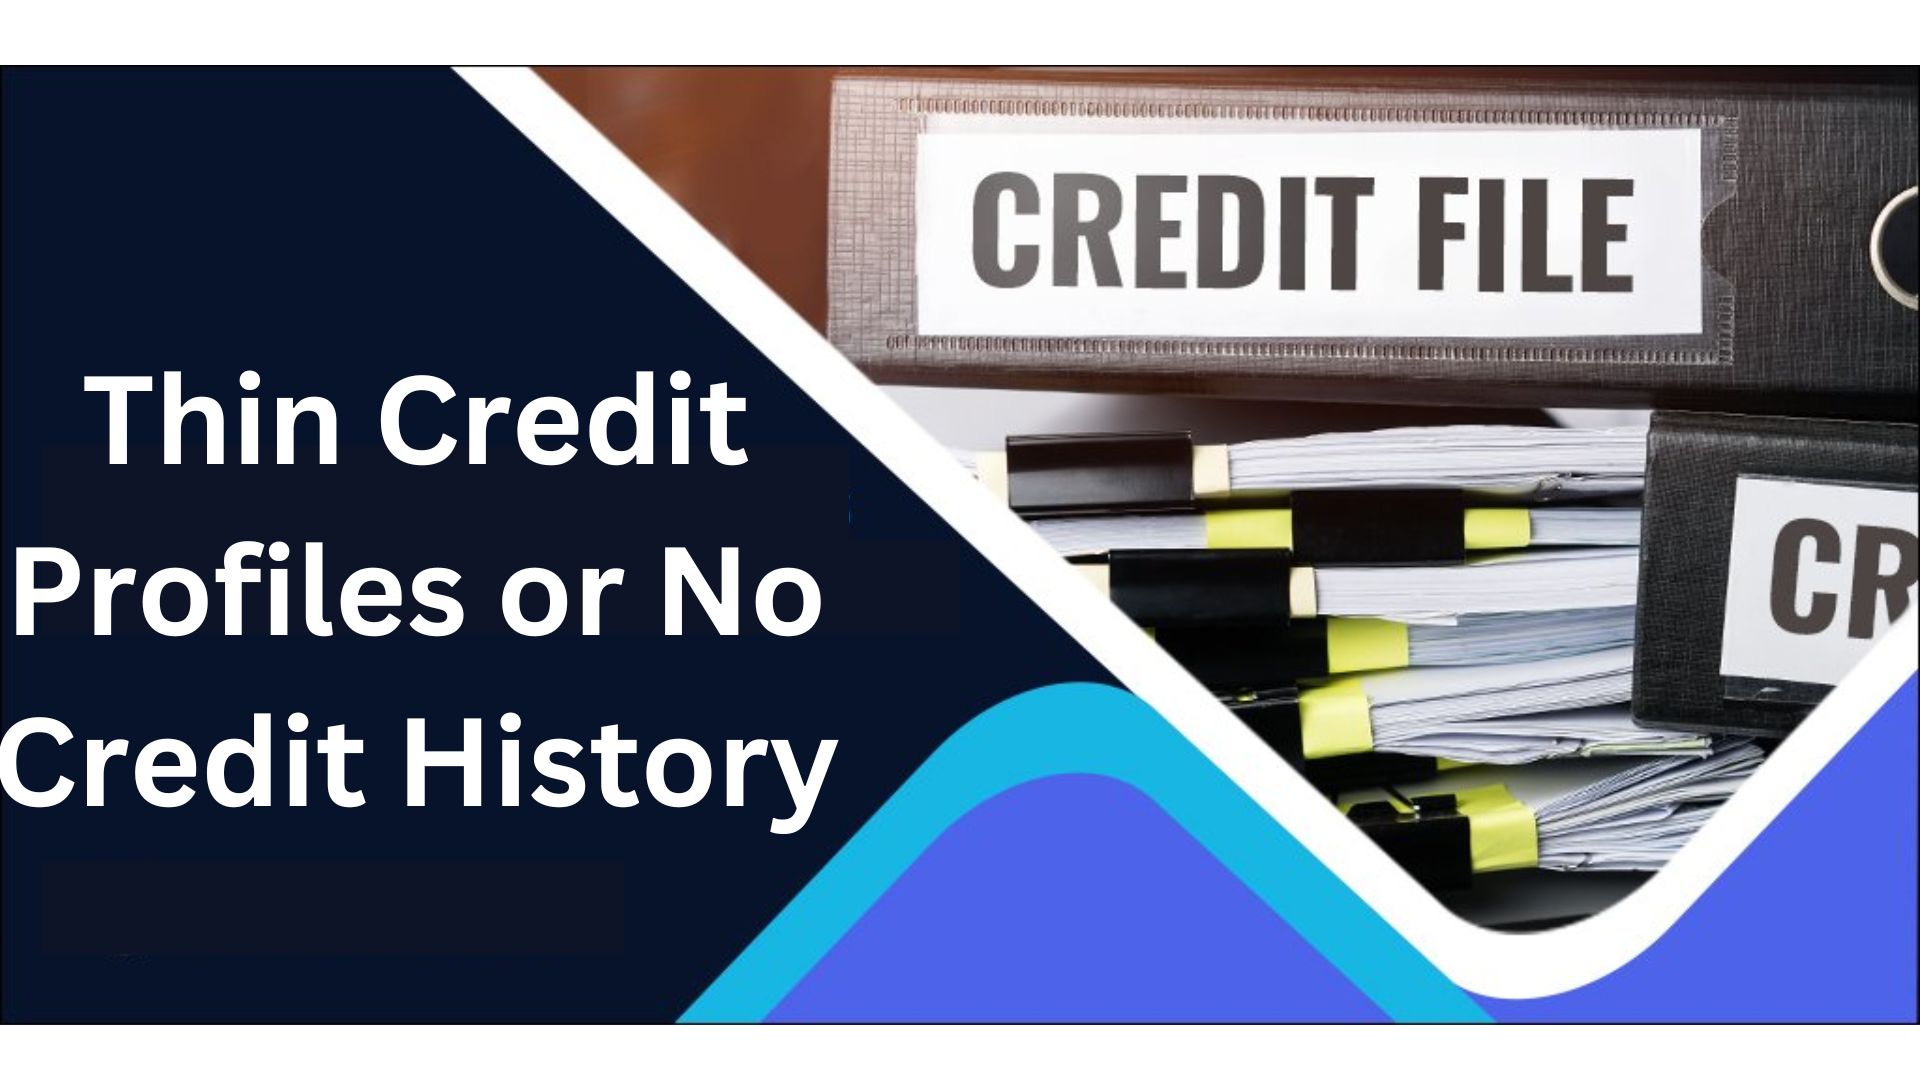 Thin Credit Profiles or No Credit History